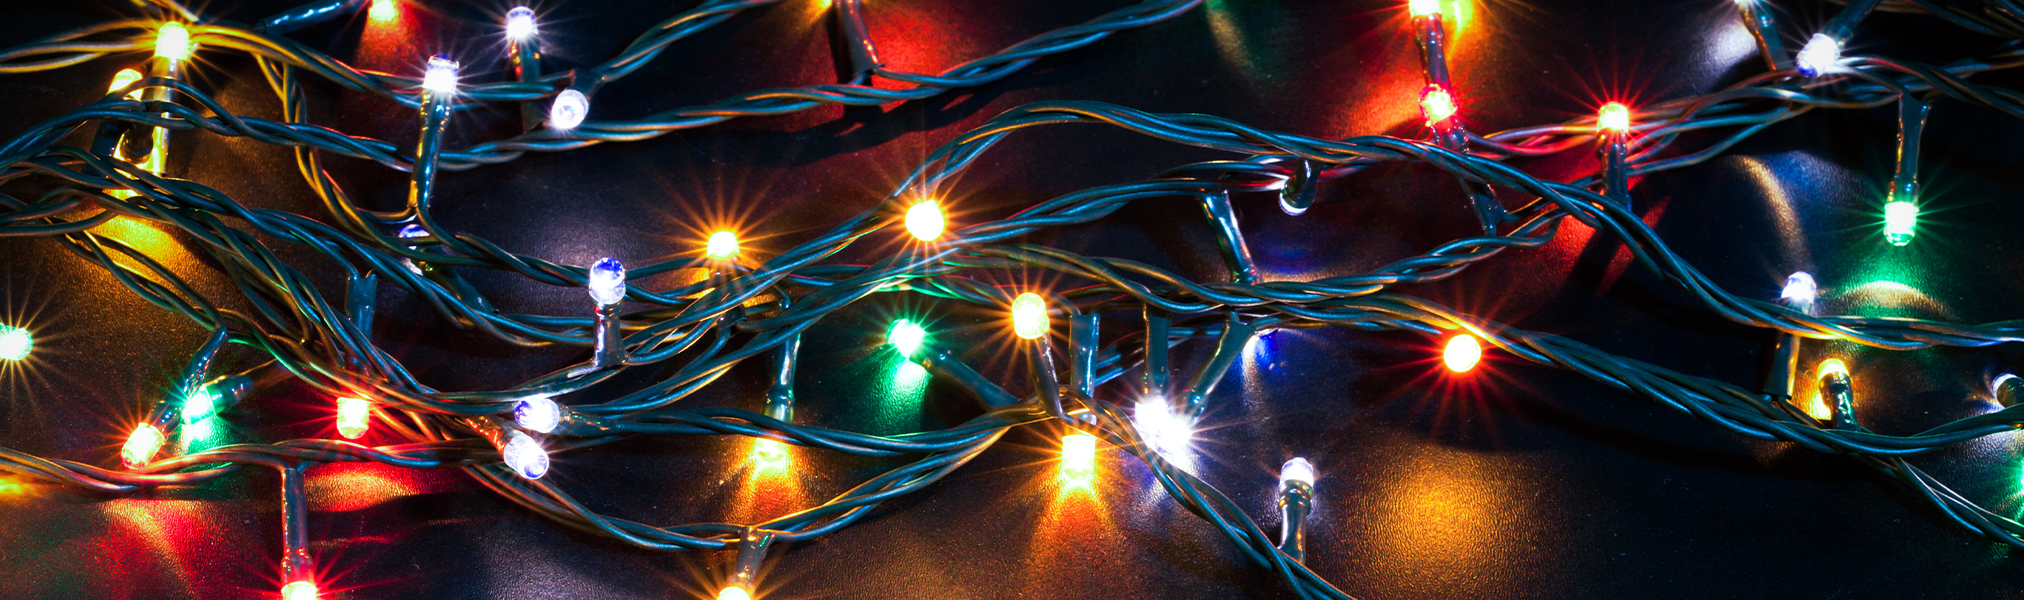 Khoa học đèn Giáng Sinh là một lĩnh vực thú vị, mang đến cho chúng ta những hiểu biết về tập quán và truyền thống của mùa đông và Giáng Sinh. Hãy tìm hiểu thêm về cách hoạt động và sự phát triển của các loại đèn, màu sắc và kỹ thuật hiển thị trên đèn. Điều này sẽ giúp bạn hiểu rõ hơn về cách tạo ra một không gian đầy ấn tượng trong mùa Giáng Sinh.